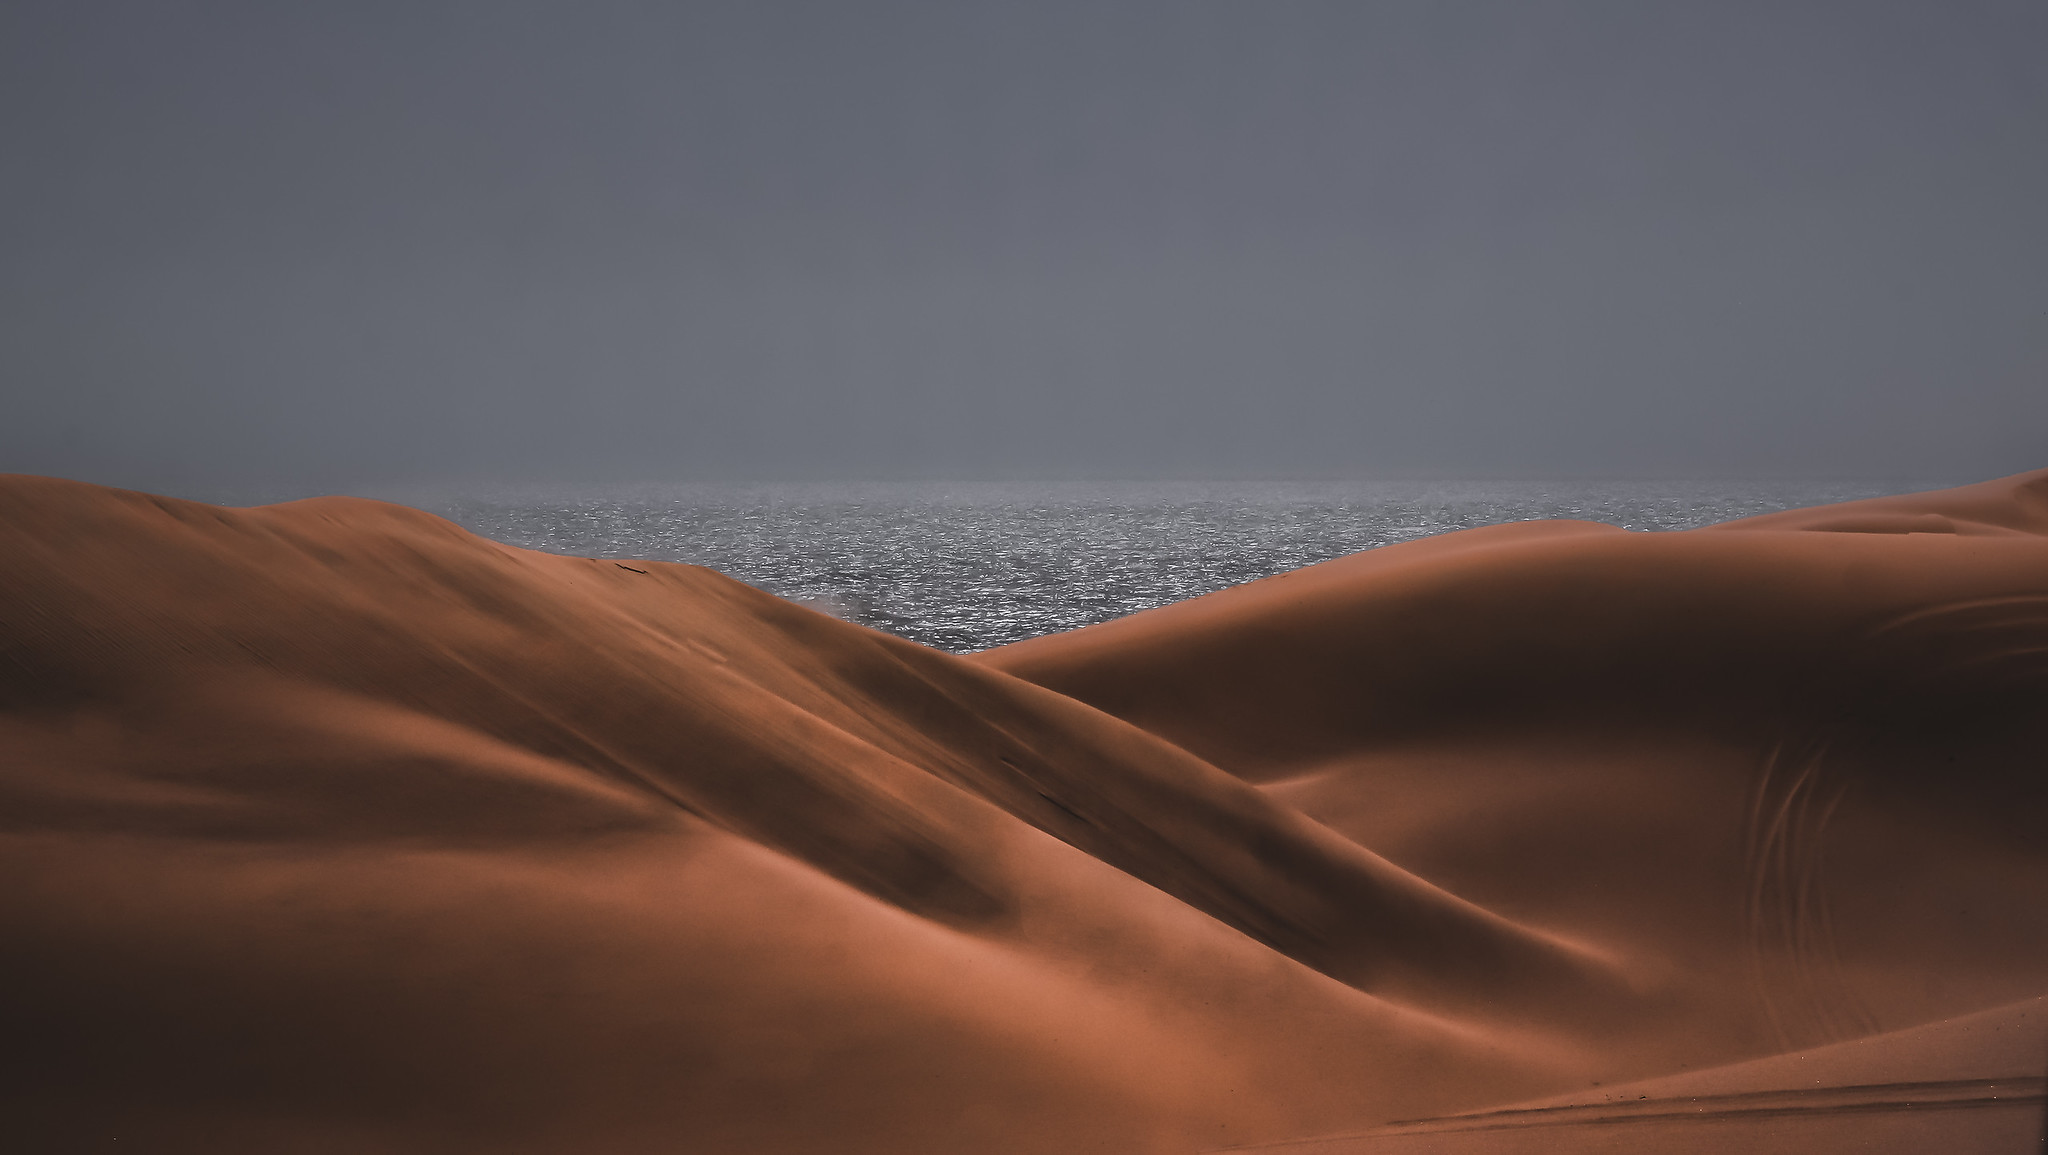 Namib Deserts meets the Atlantic Ocean